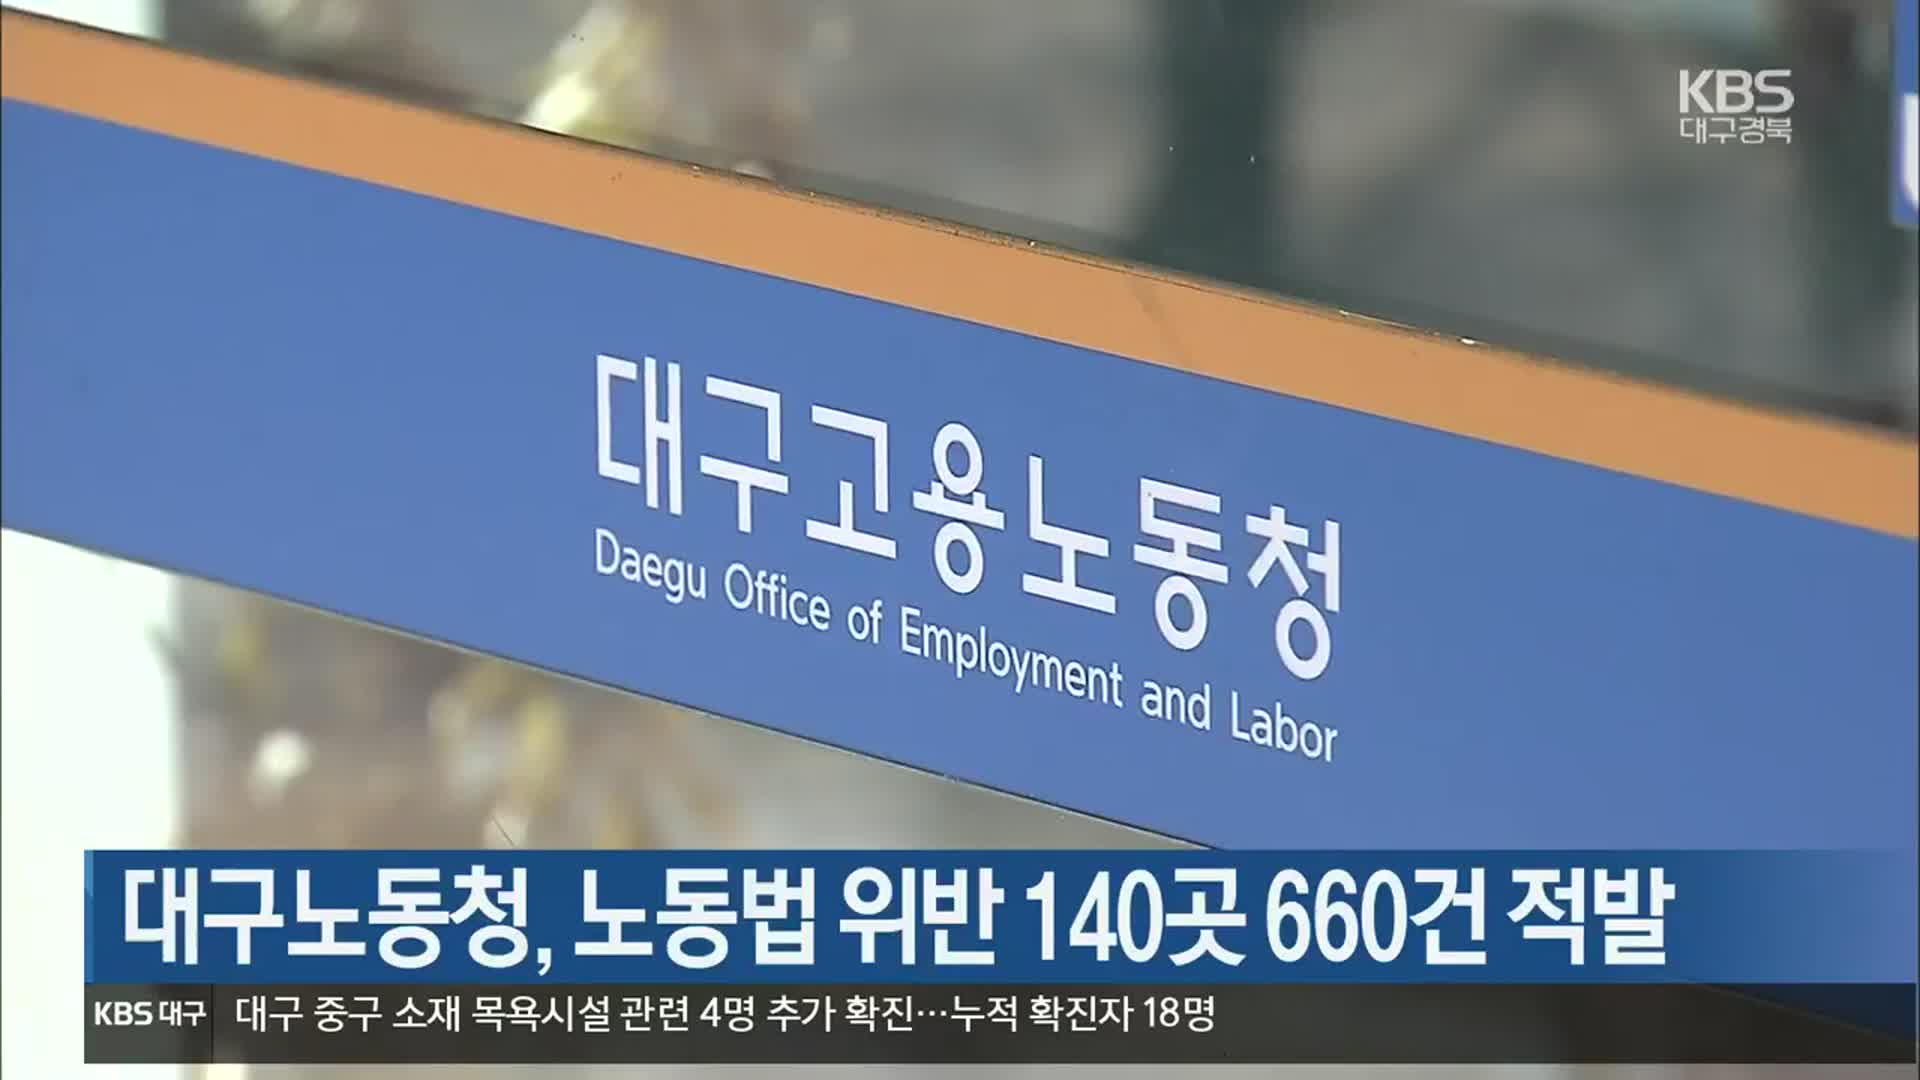 대구노동청, 노동법 위반 140곳 660건 적발